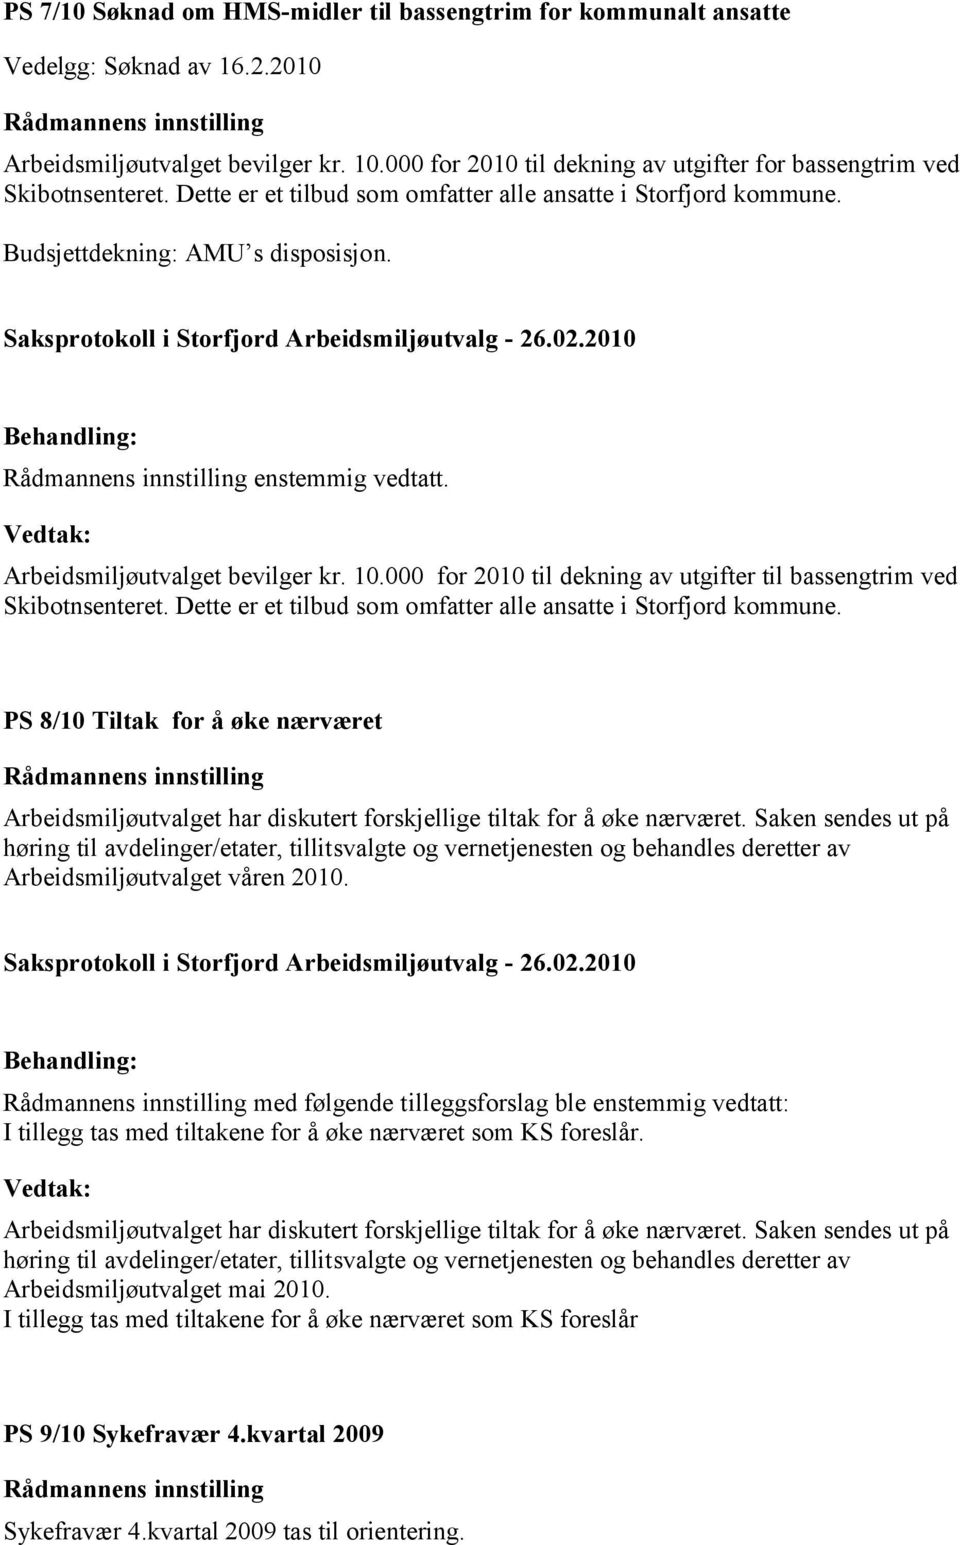 Arbeidsmiljøutvalget bevilger kr. 10.000 for 2010 til dekning av utgifter til bassengtrim ved Skibotnsenteret. Dette er et tilbud som omfatter alle ansatte i Storfjord kommune.